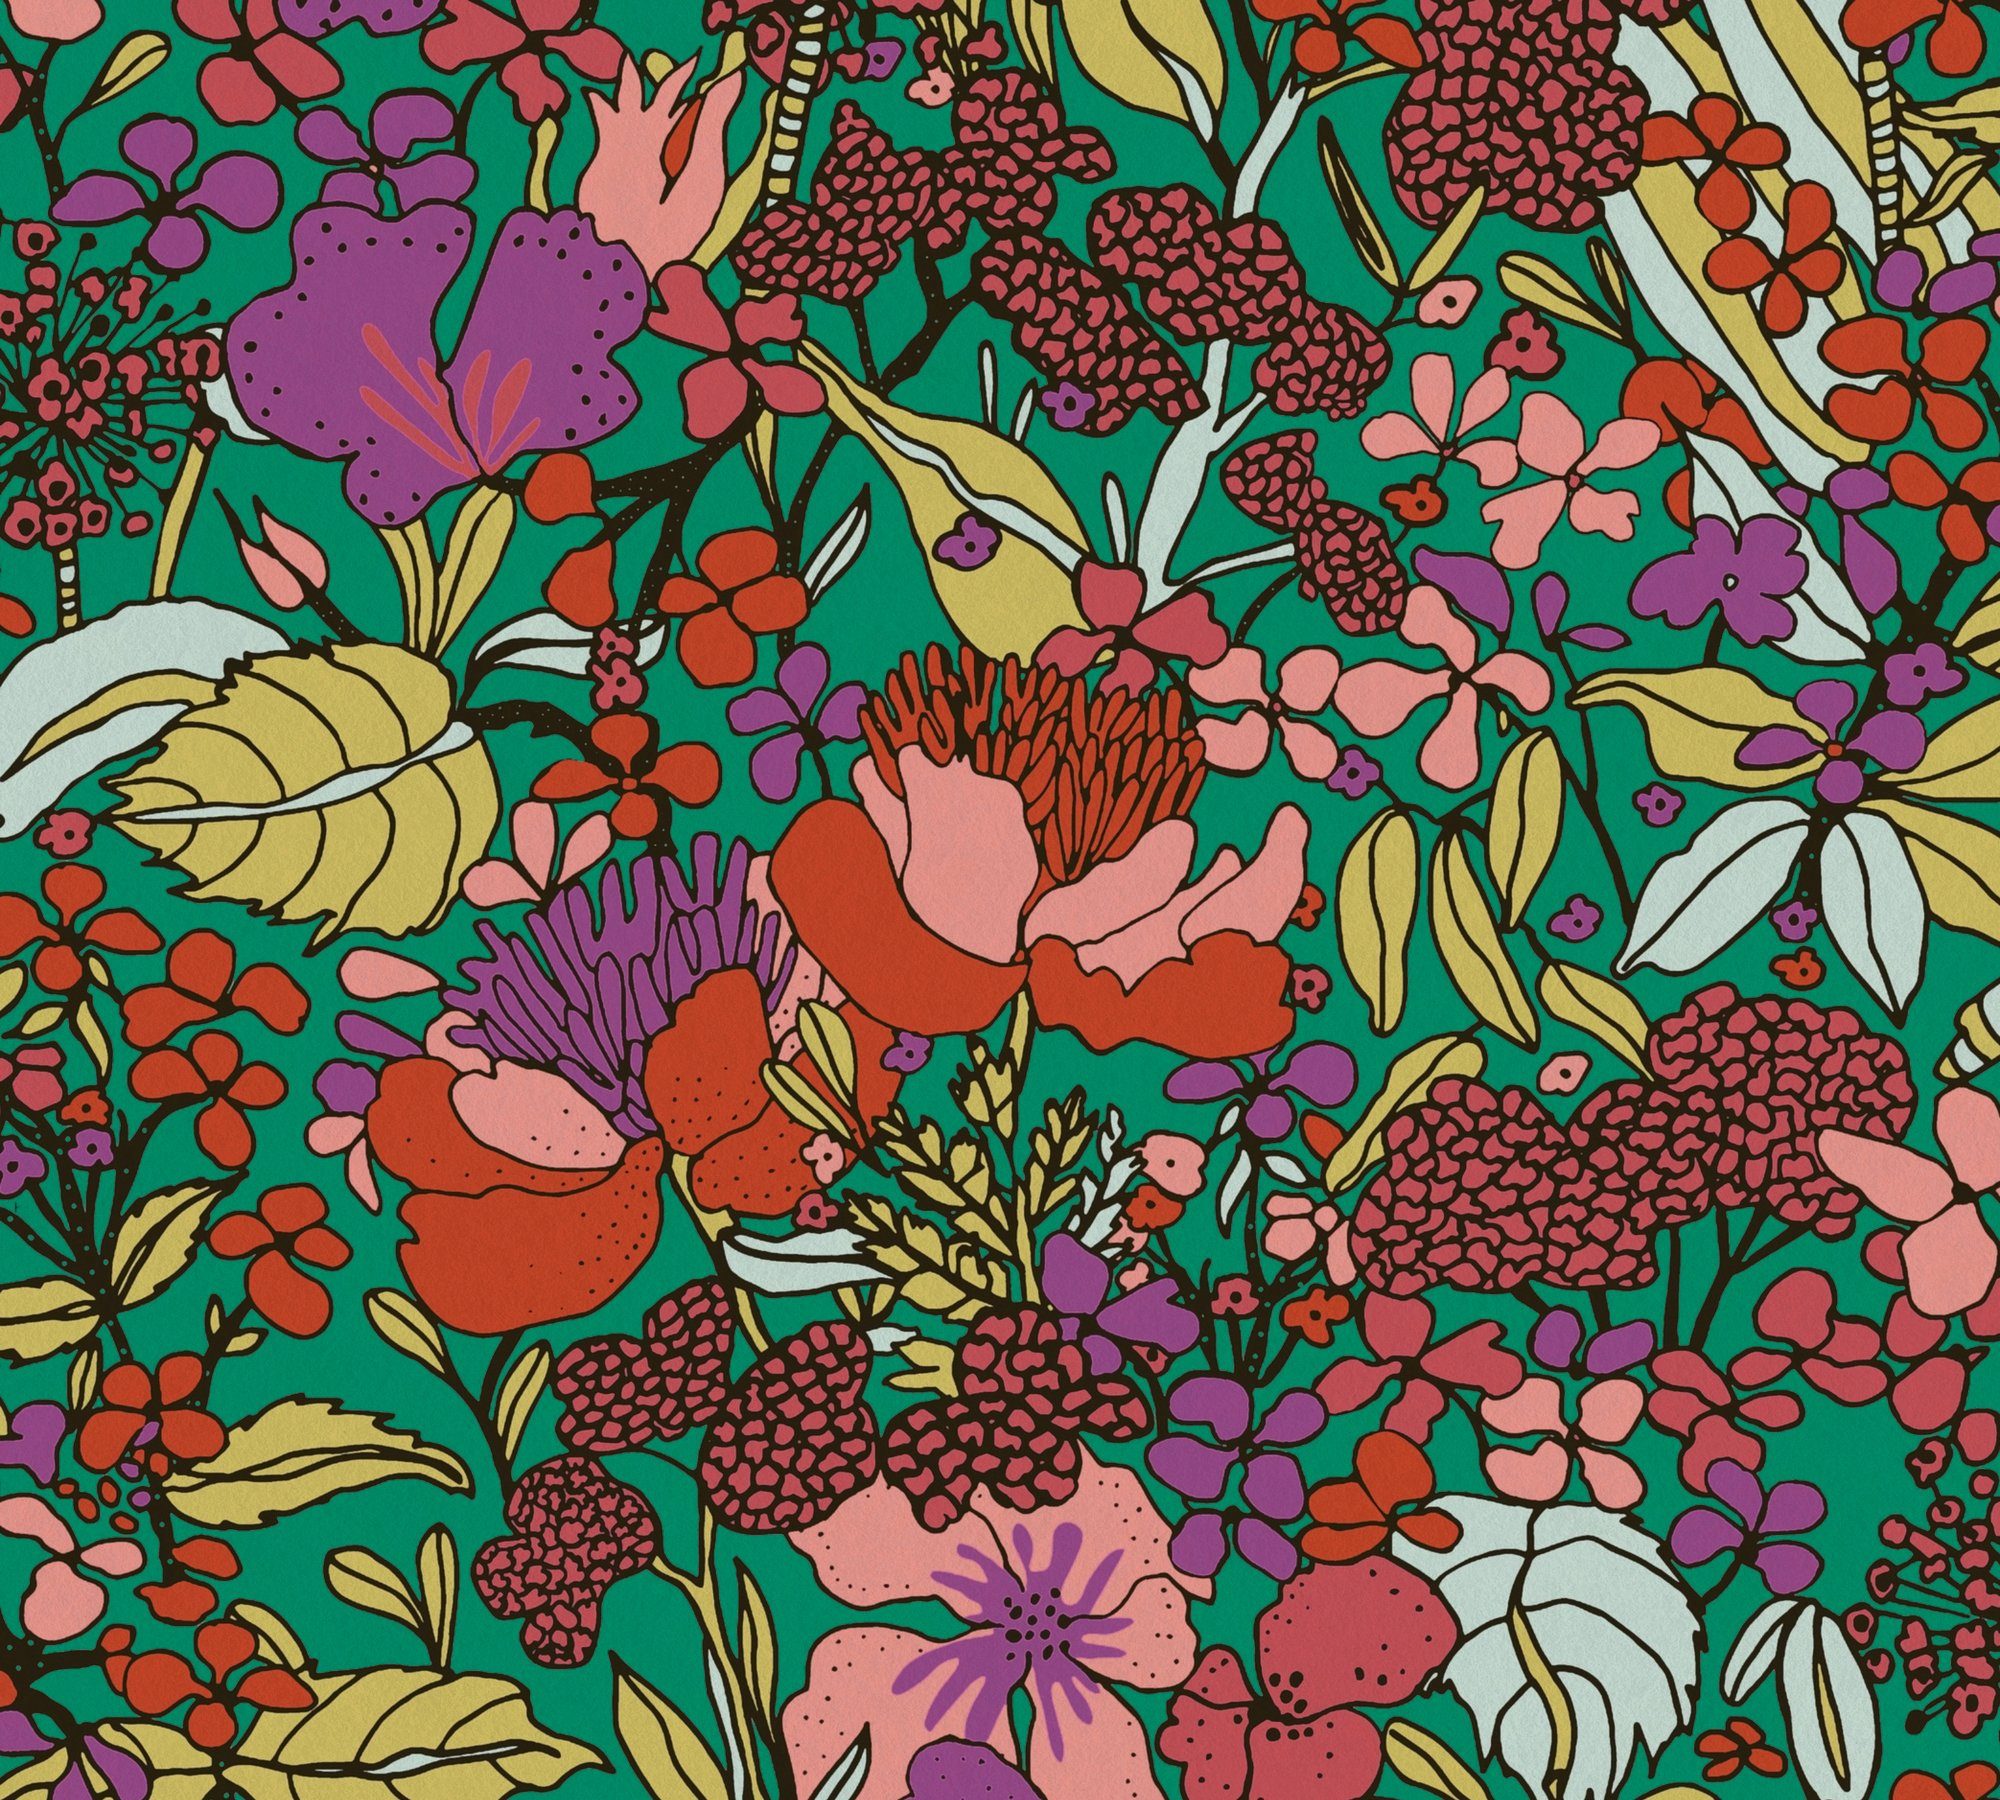 bunt/grün/rot Tapete Impression, Paper botanisch, glatt, Blumentapete Dschungel Vliestapete floral, Floral Architects